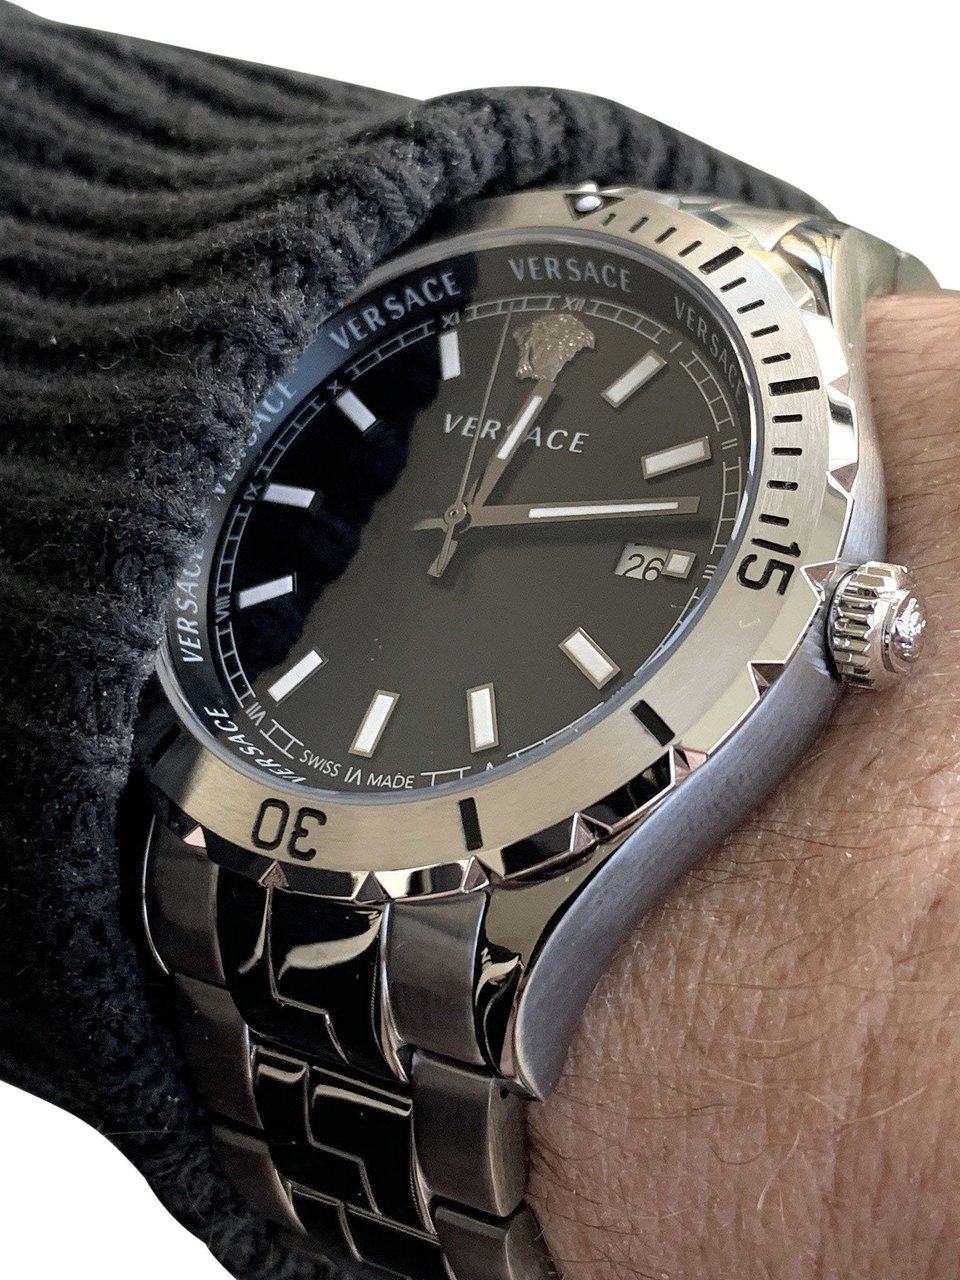 Versace VE3A00620 Hellenyium heren horloge 42 mm Zwart